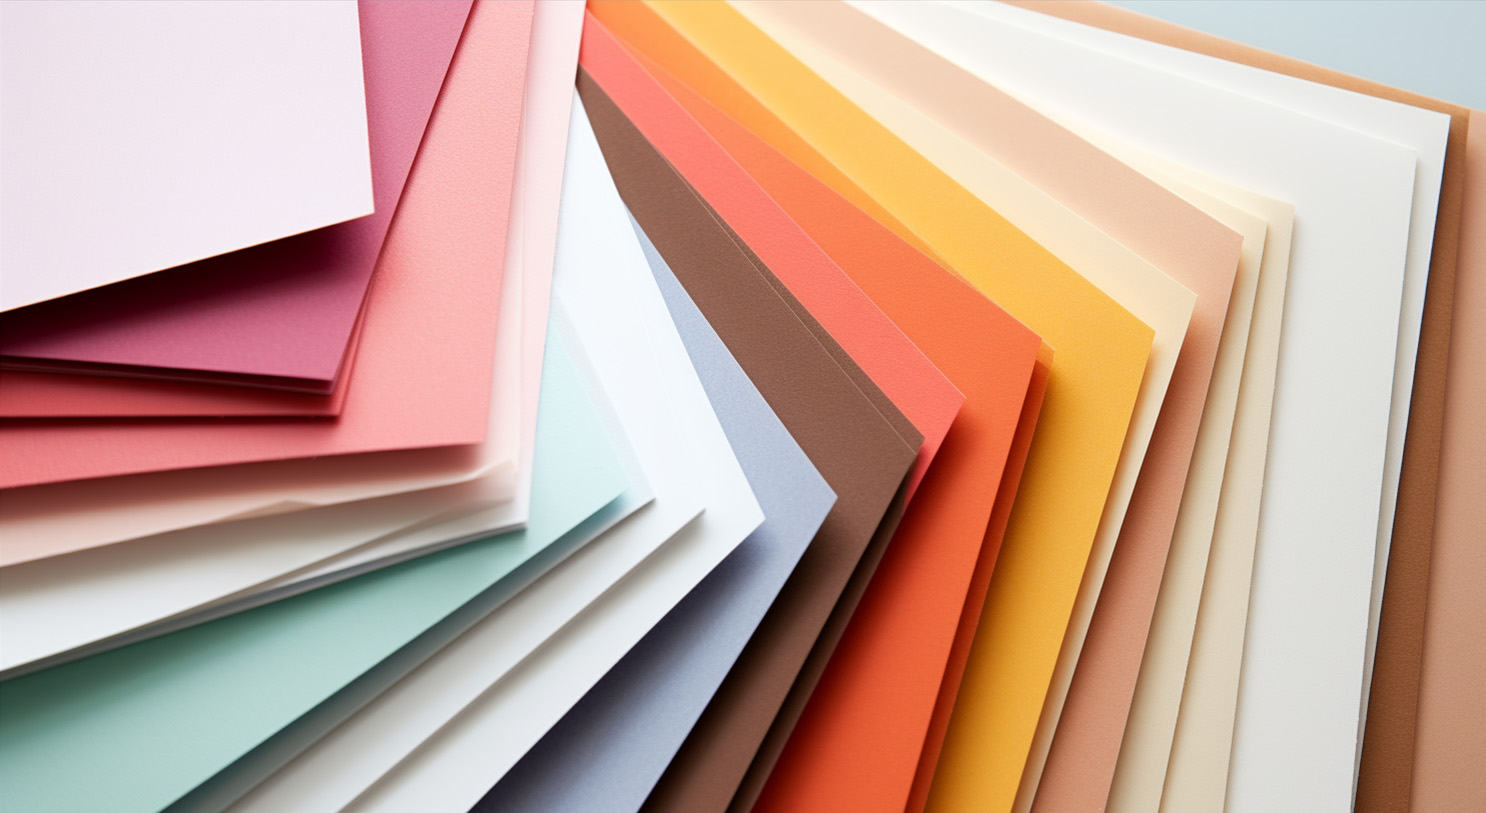 Bastelpapier in verschiedenen Größen und Farben inkl. Ratgeber